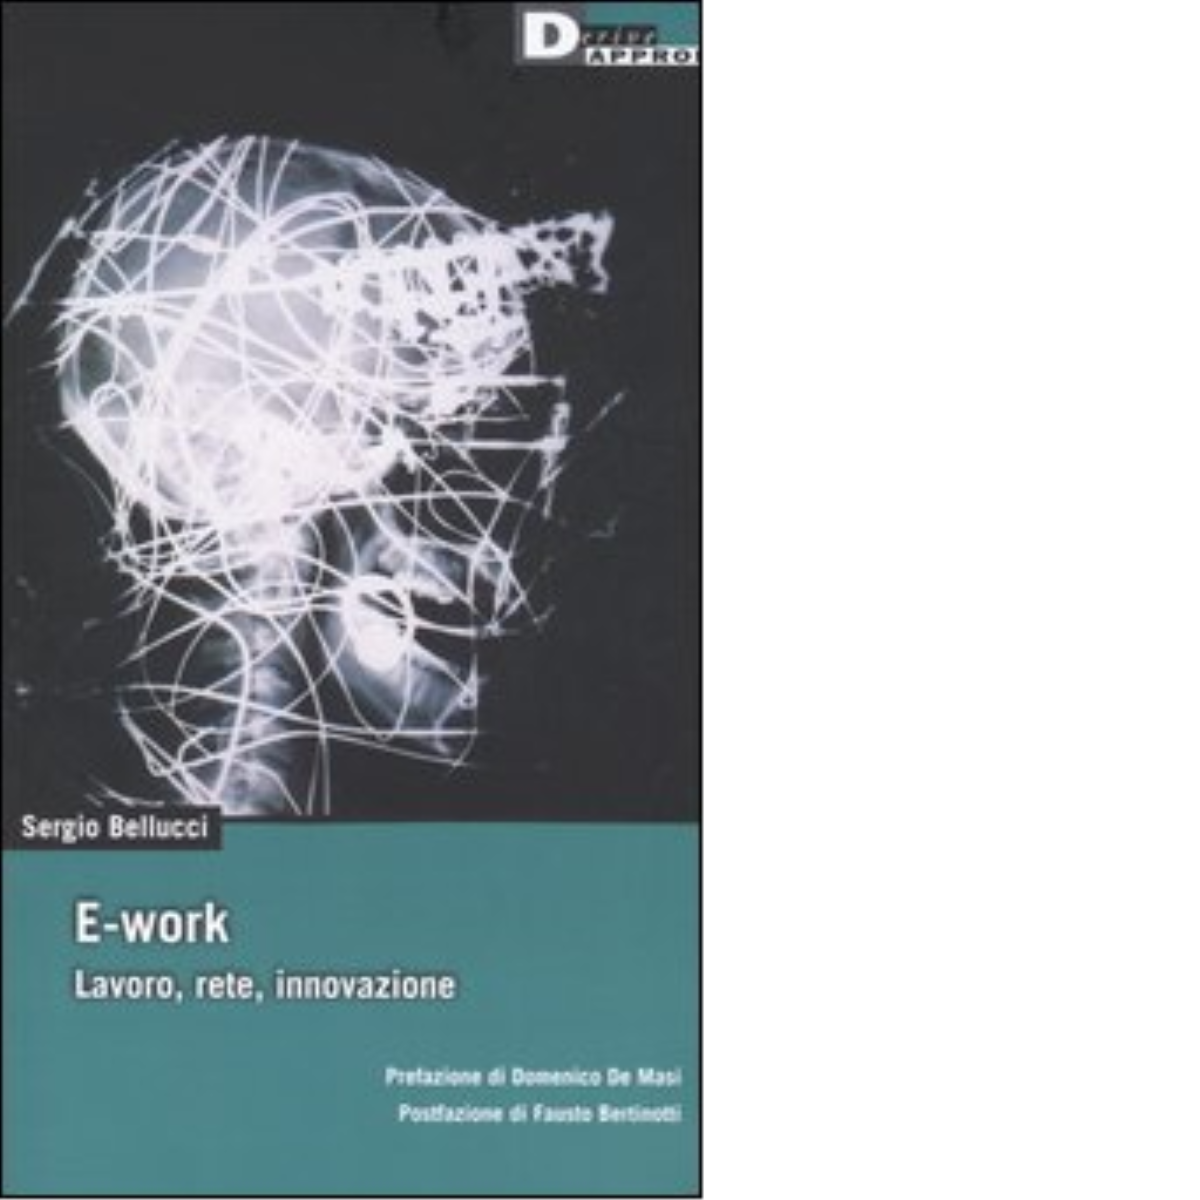 E-work. Lavoro, rete, innovazione di Sergio Bellucci - DeriveApprodi, 2005